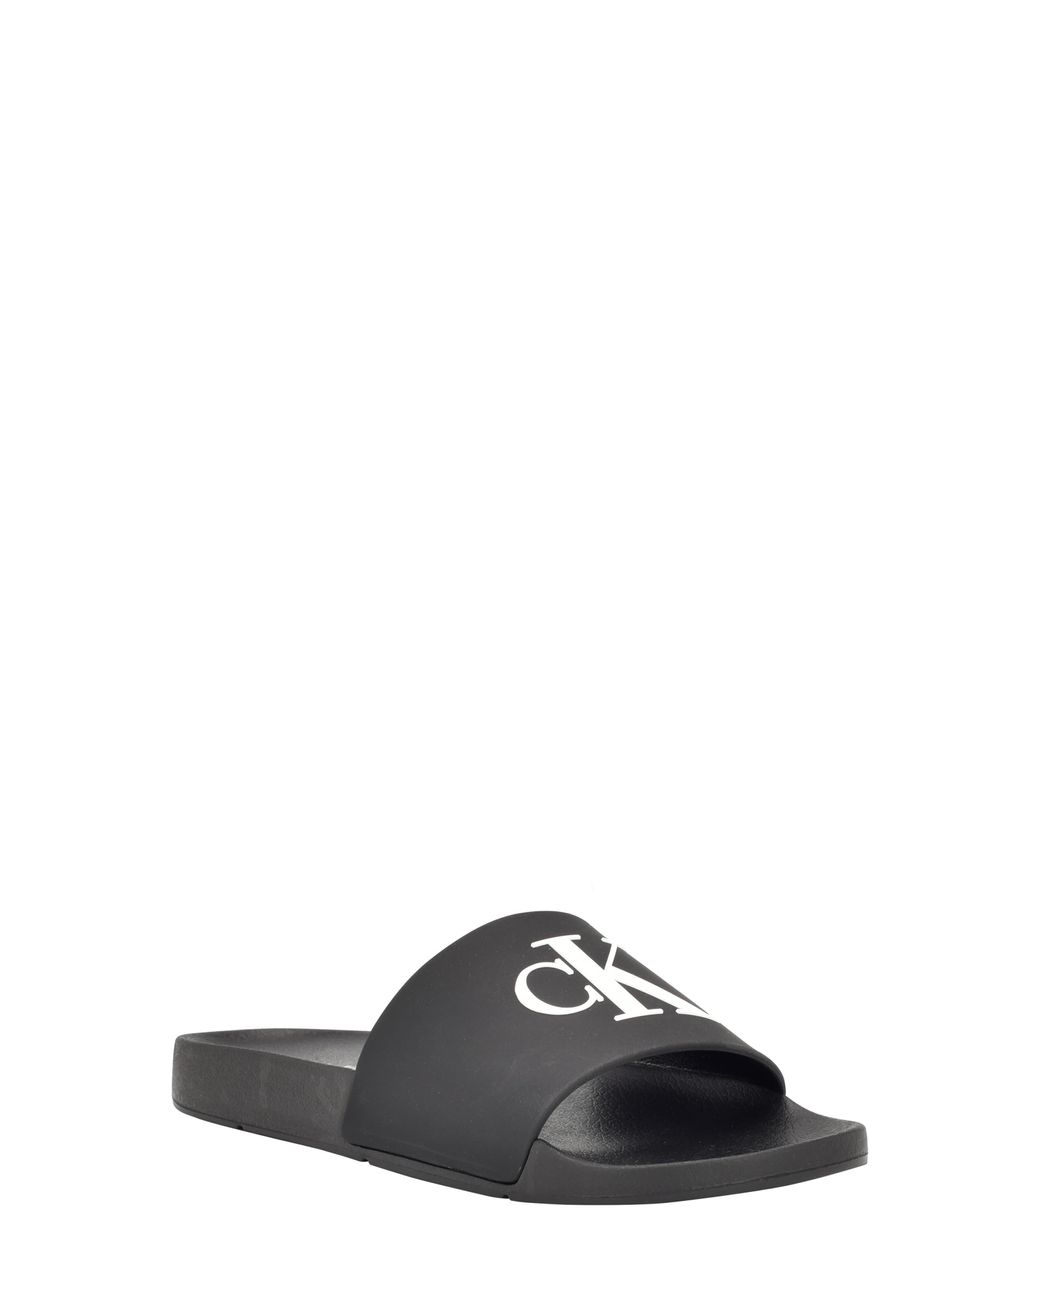 Calvin Klein Arin 2 Slide Sandal in Black | Lyst